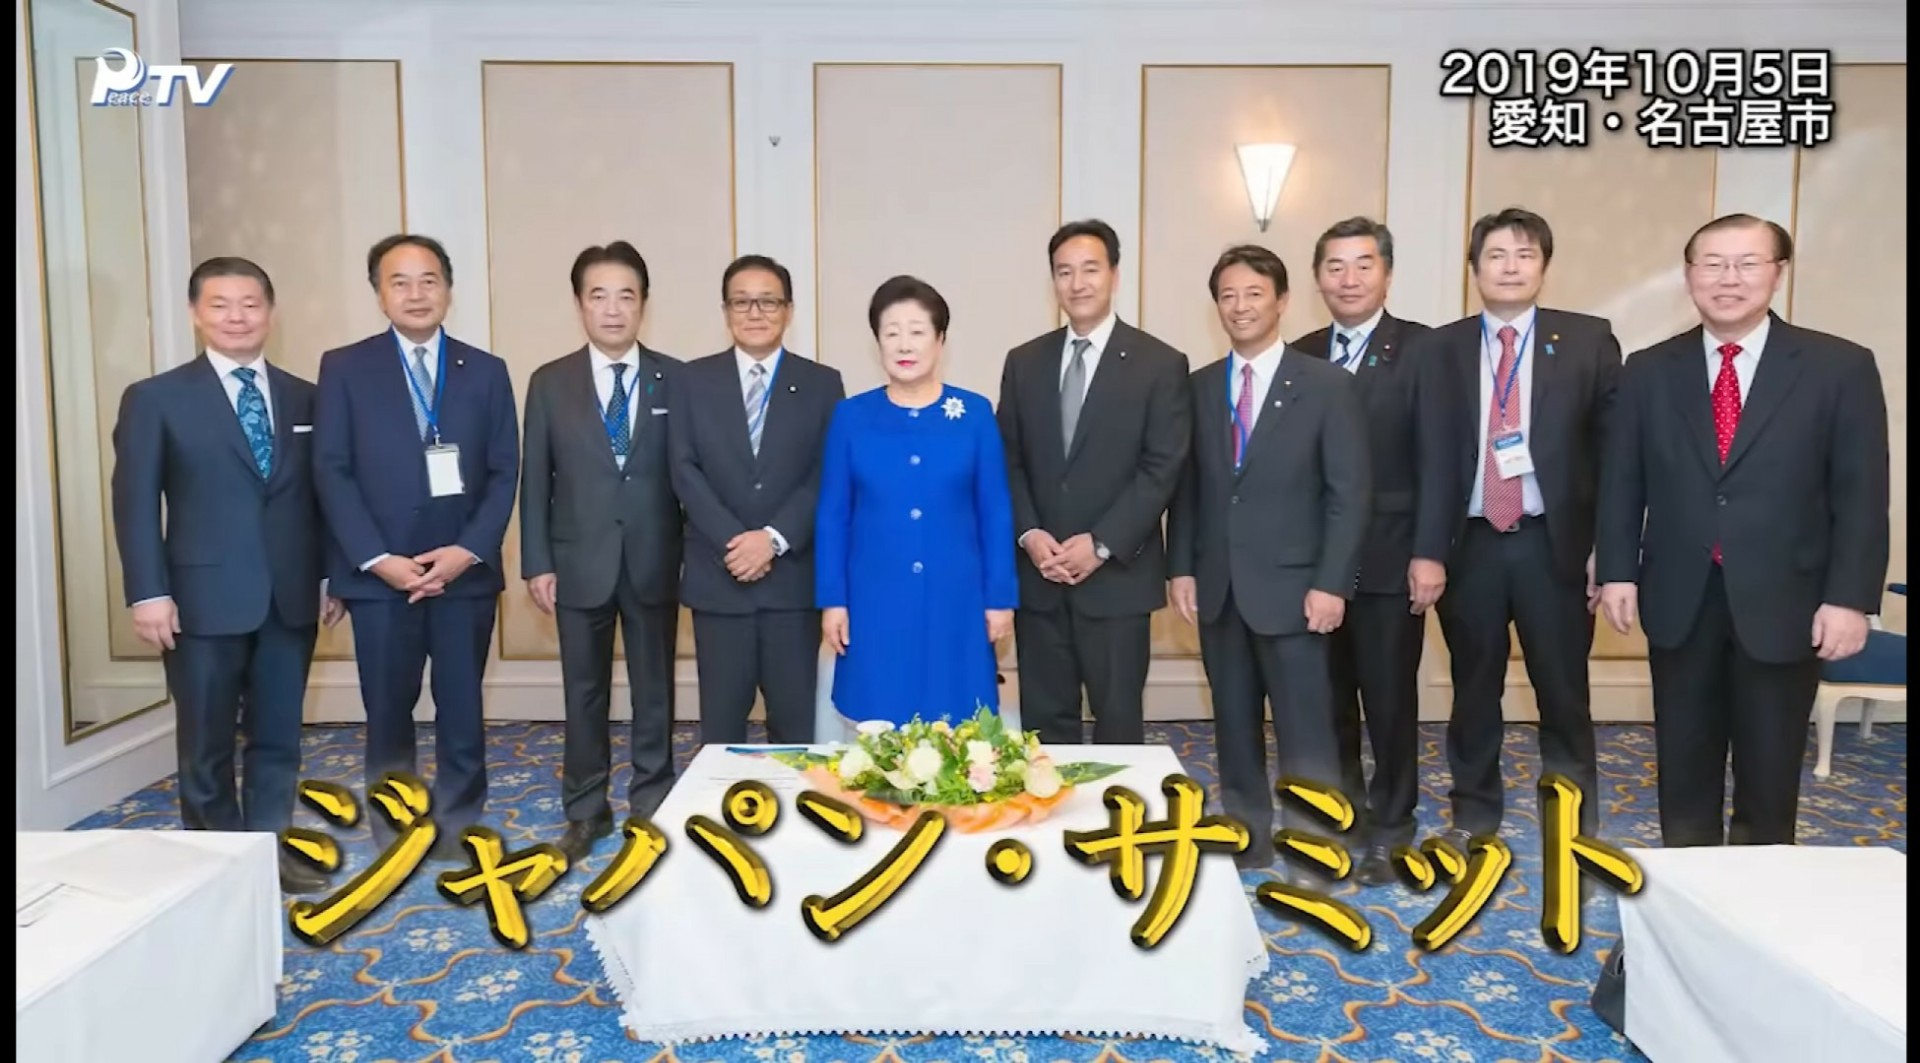 山際経済再生大臣、韓鶴子（かん、つるこ）総裁のとなりでニッコリ笑顔な写真がリークされてしまう。\n_2